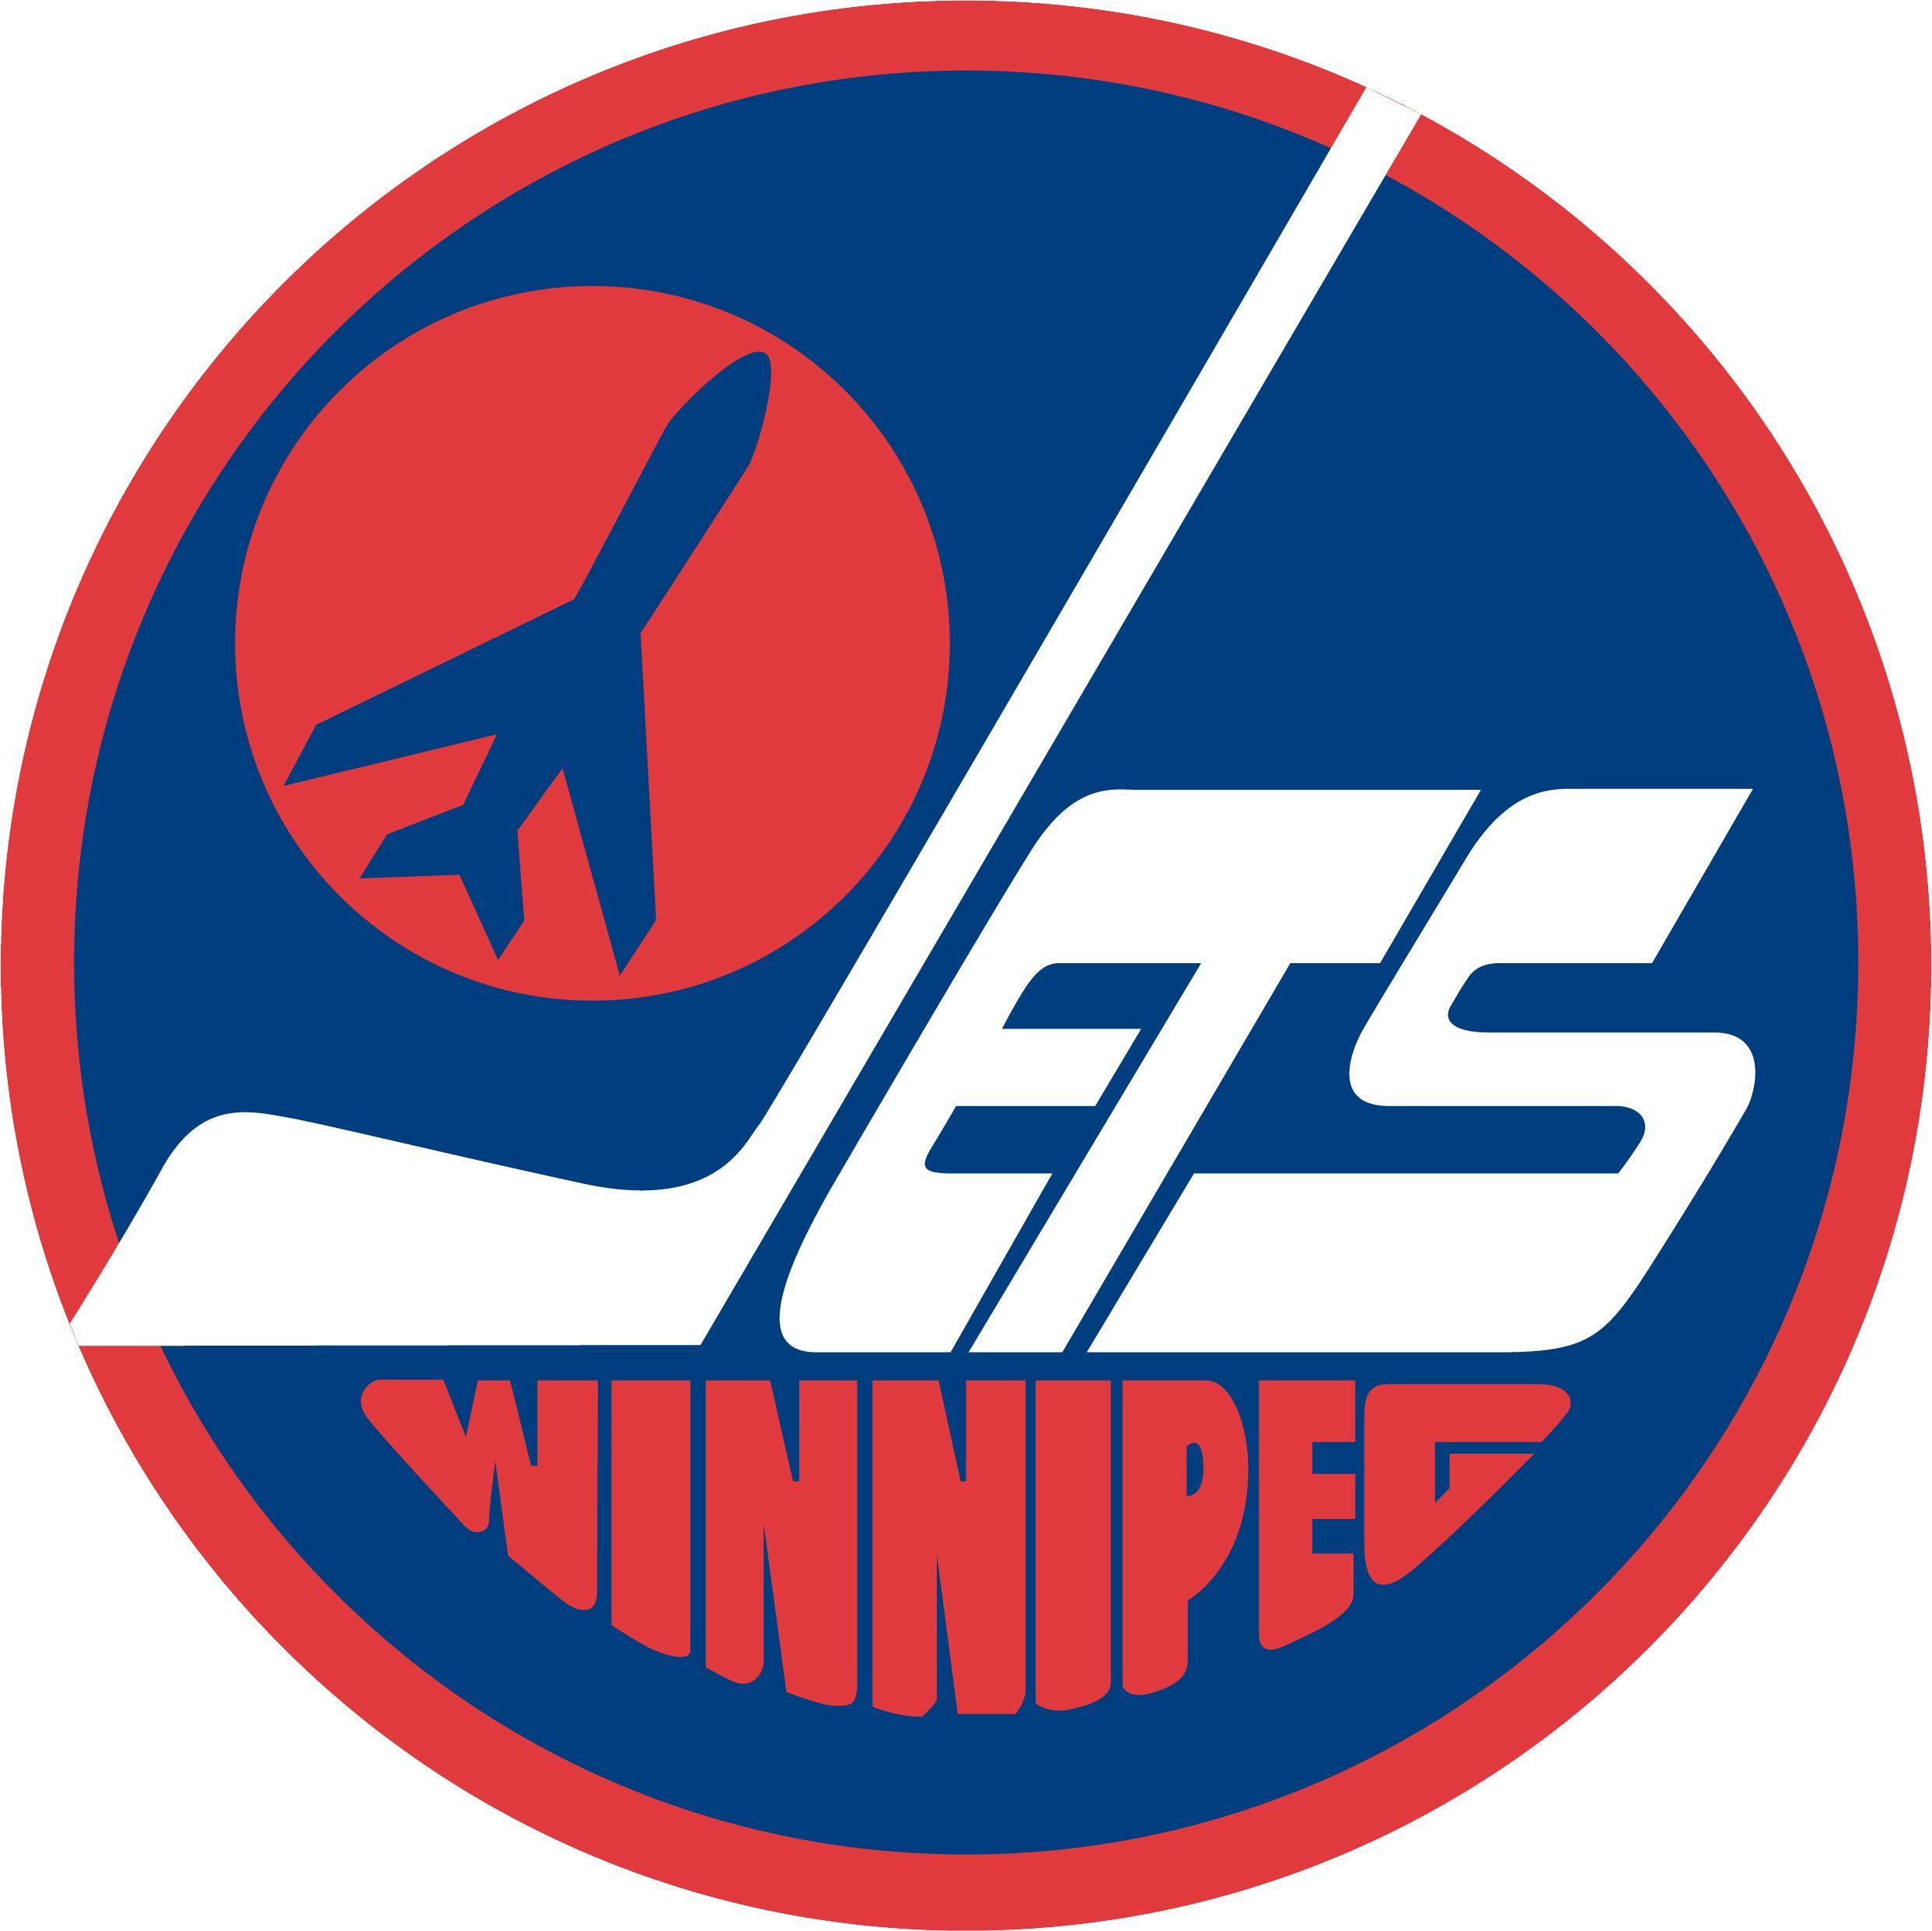 2485x2484px Winnipeg Jets 1010.41 KB